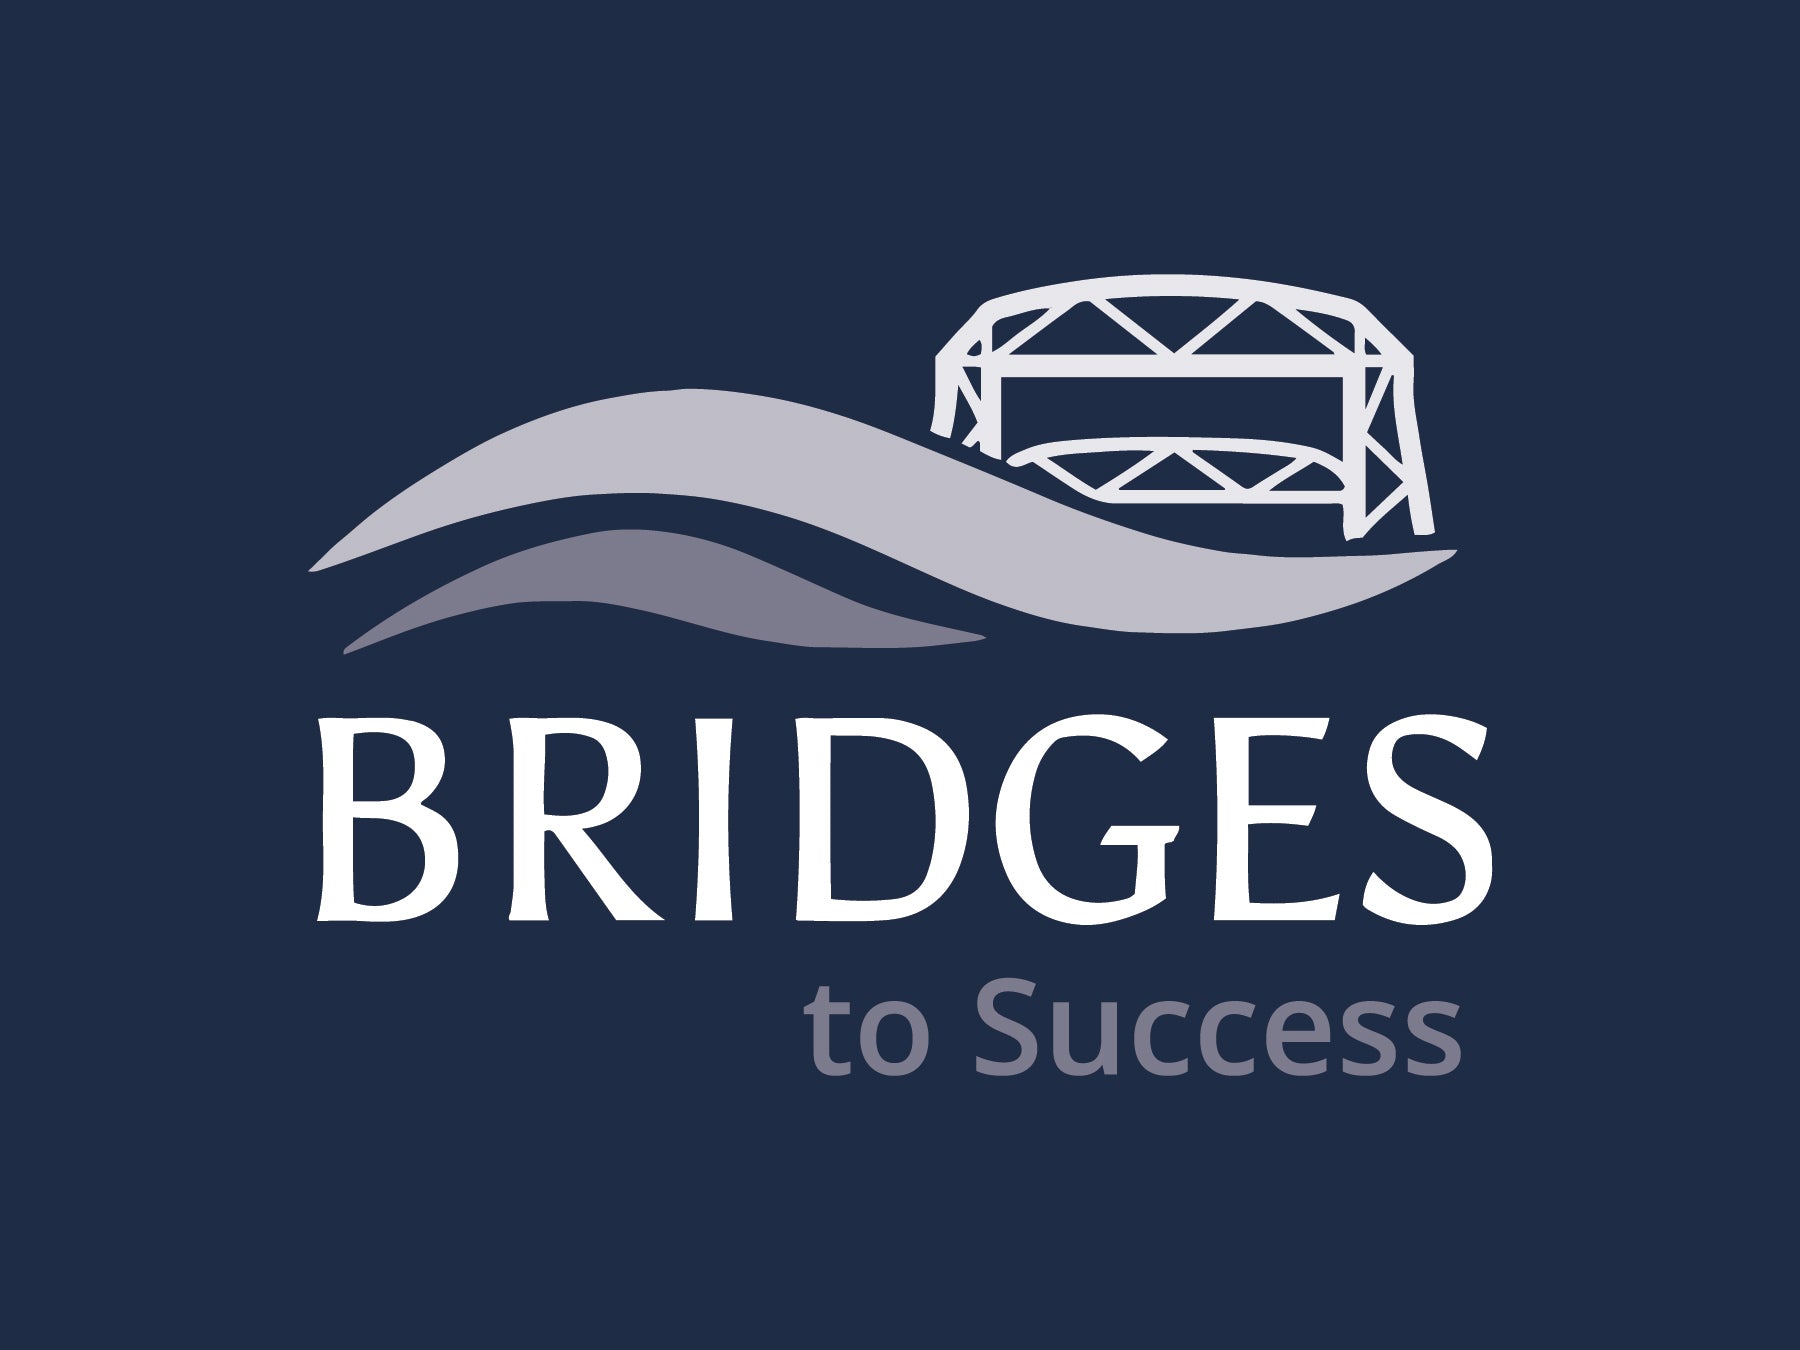 BRIDGES TO SUCCESS